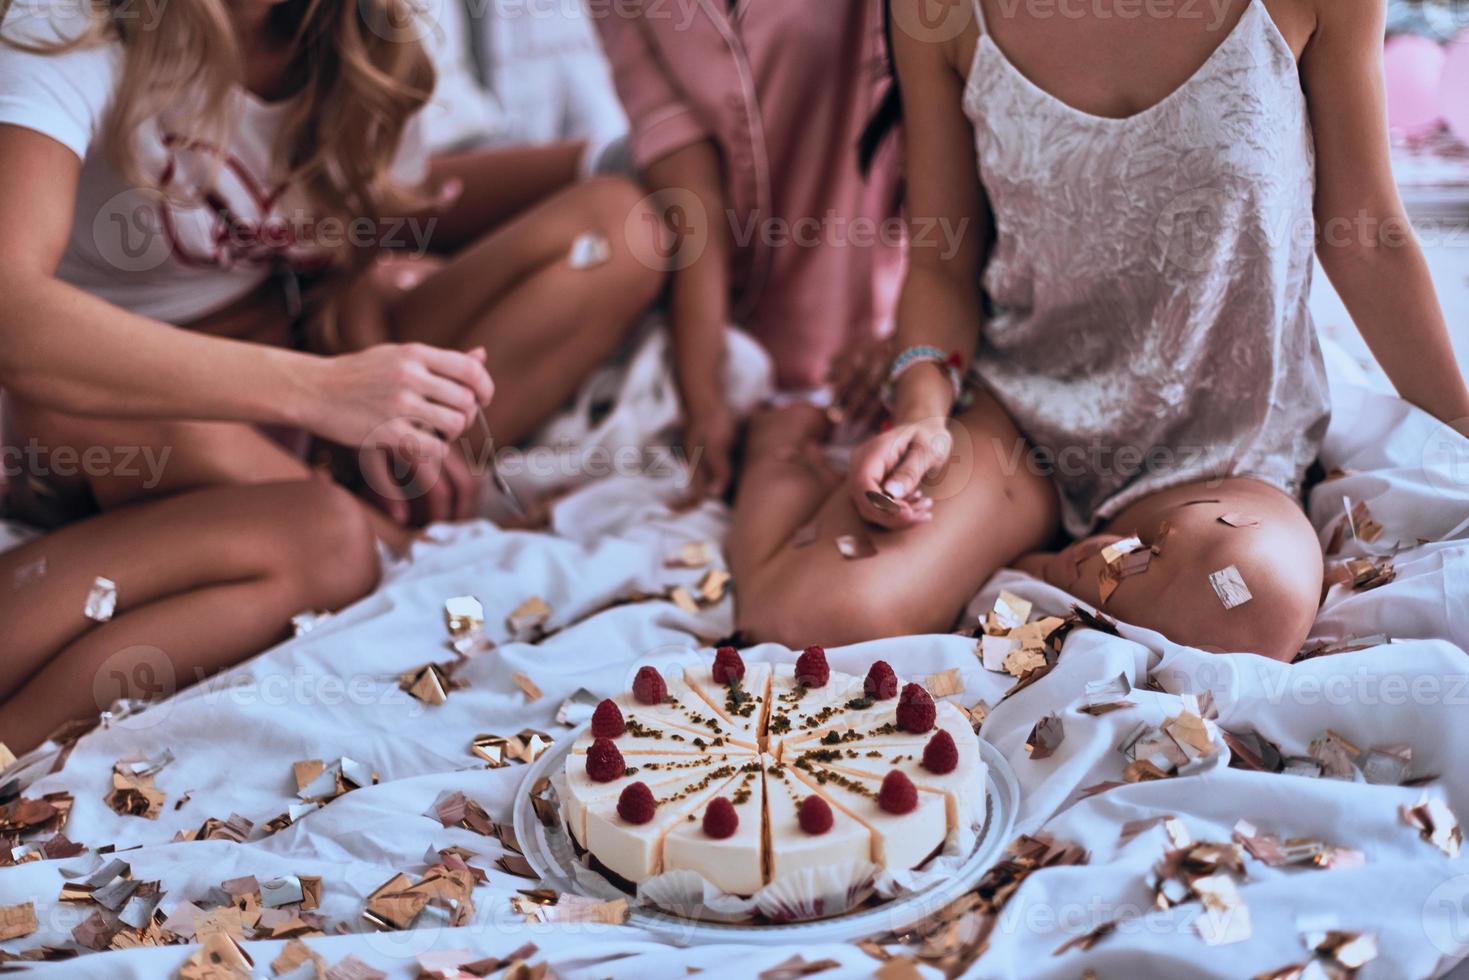 parece delicioso. close-up de quatro jovens de pijama se preparando para comer bolo enquanto faz uma festa do pijama foto